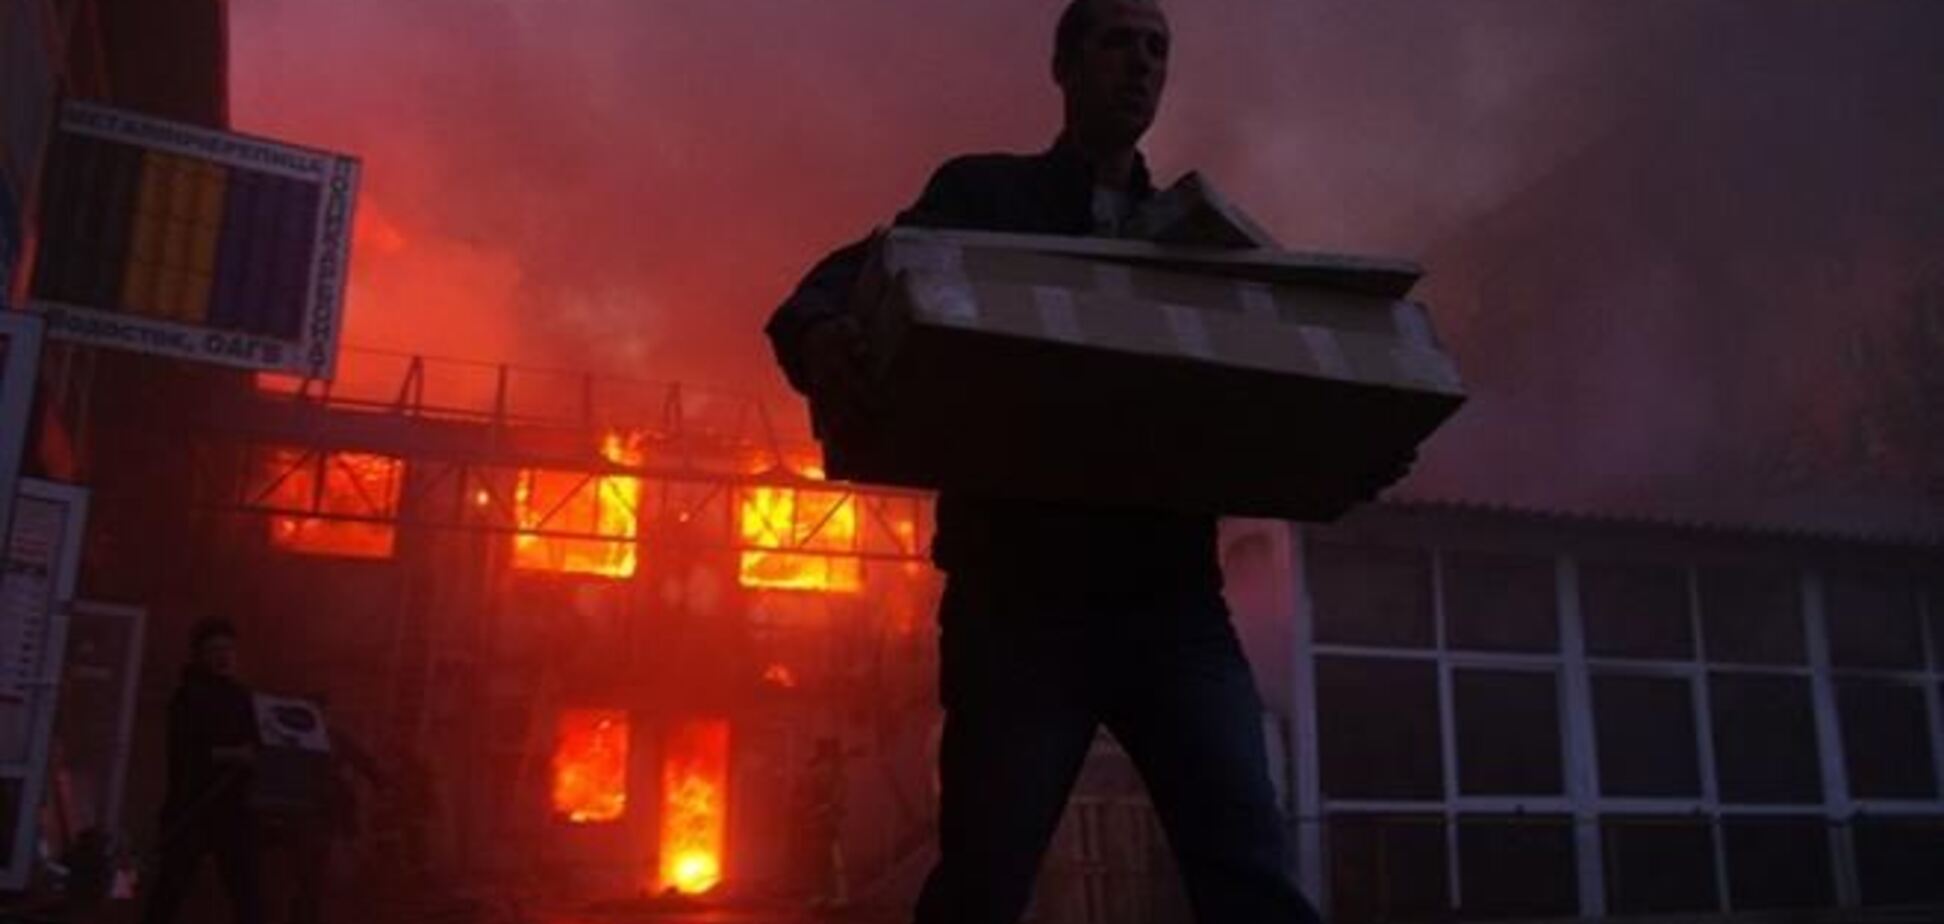 Велика пожежа на ринку в Одесі: дим було видно за кілометри